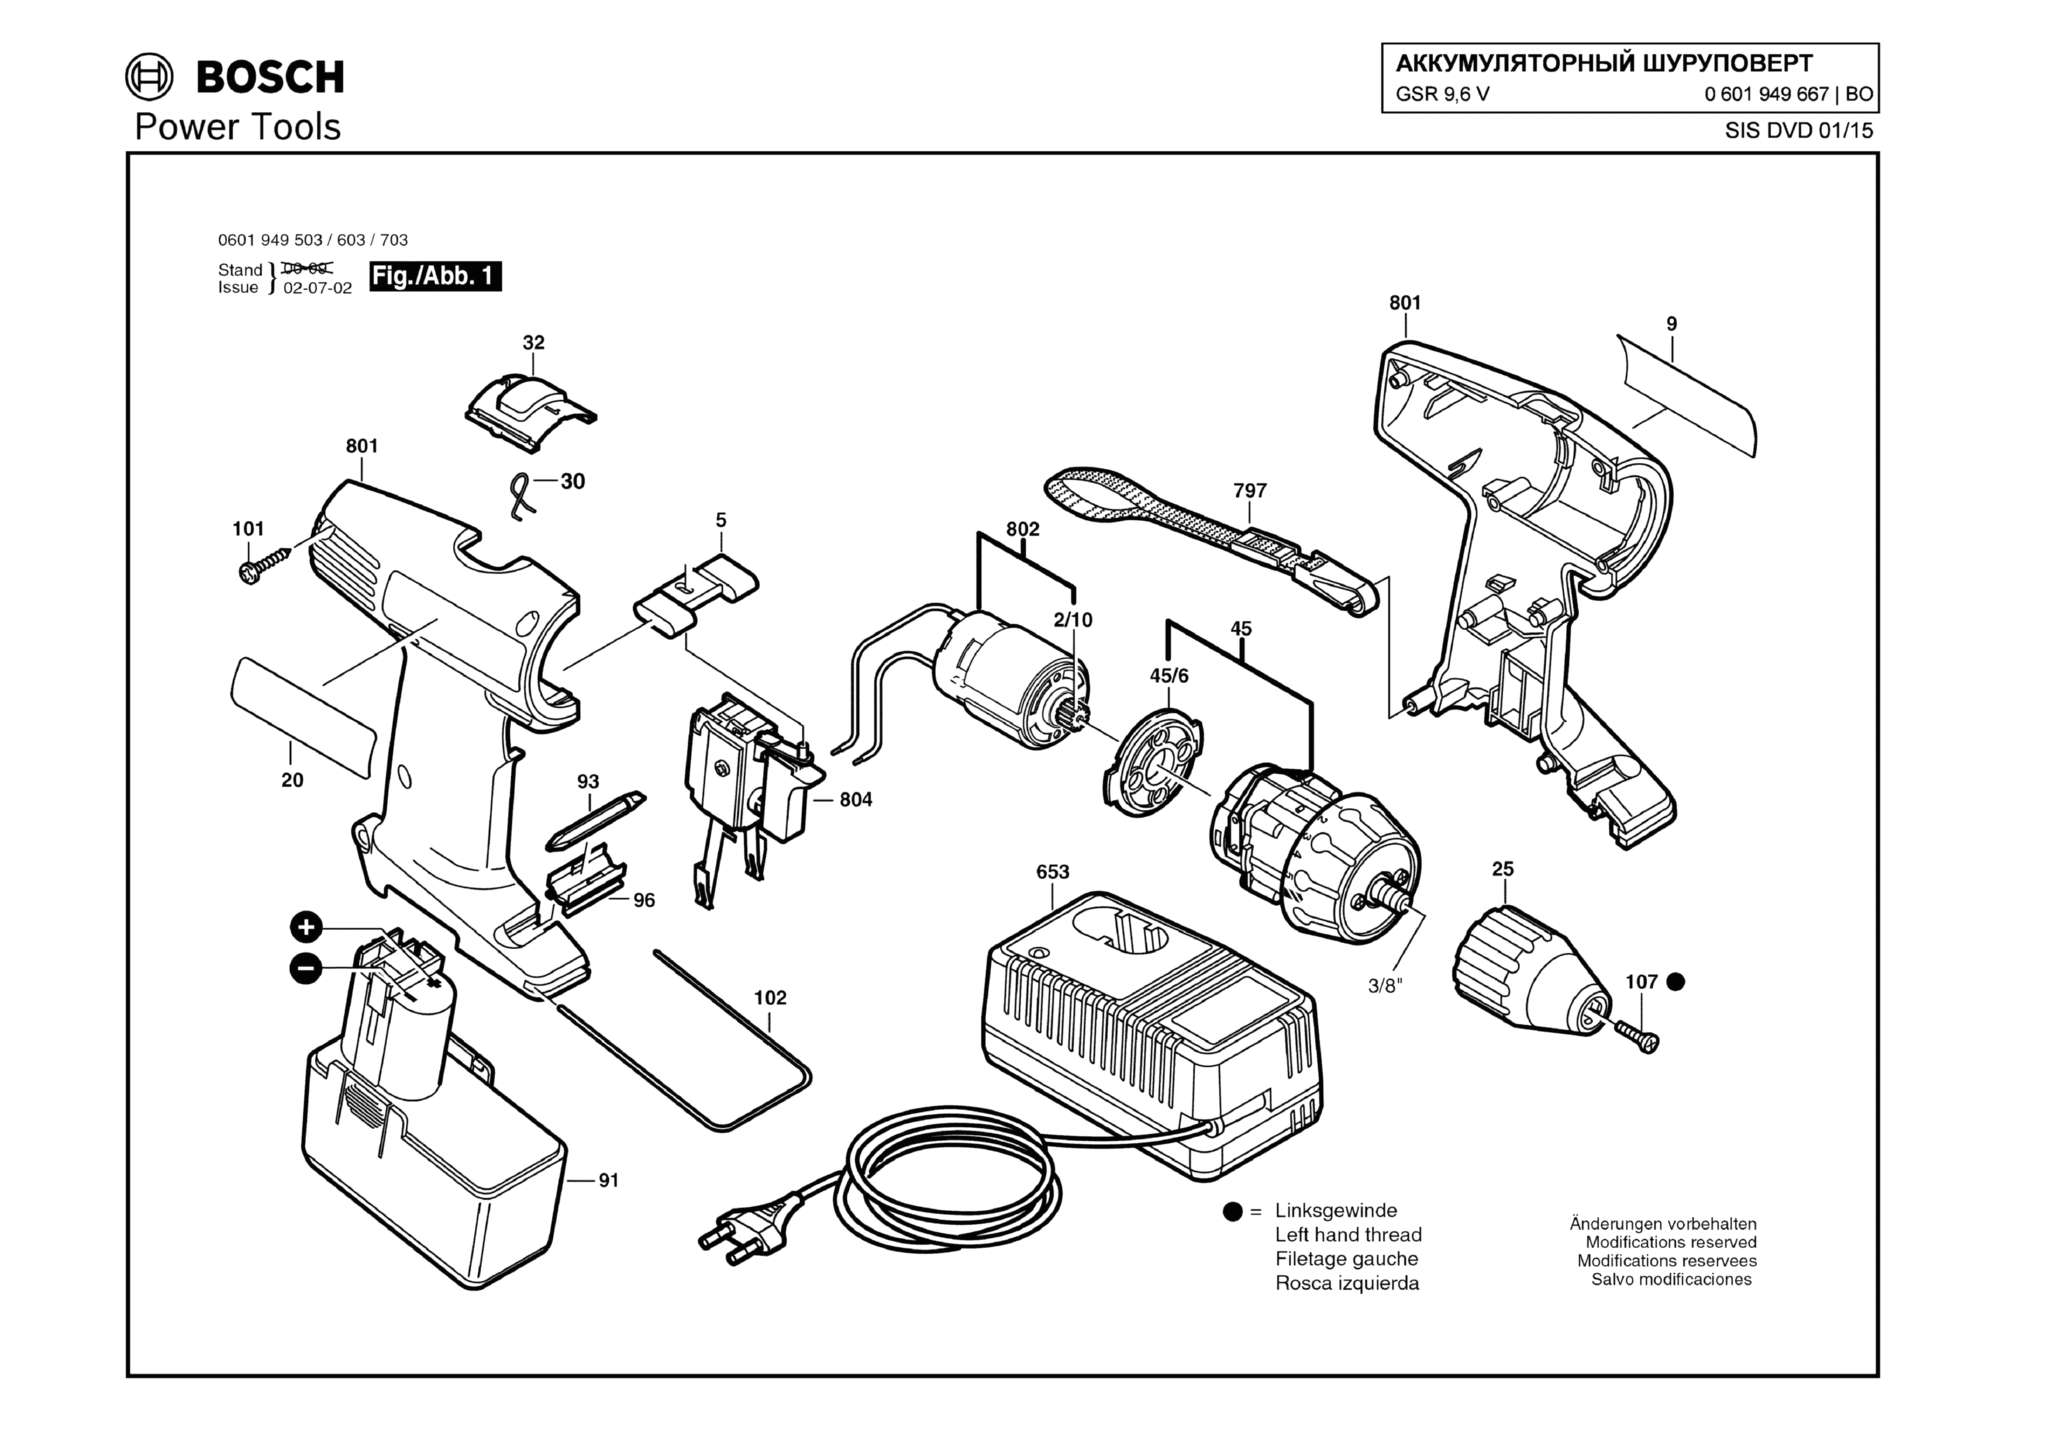 Запчасти, схема и деталировка Bosch GSR 9,6 V (ТИП 0601949667)